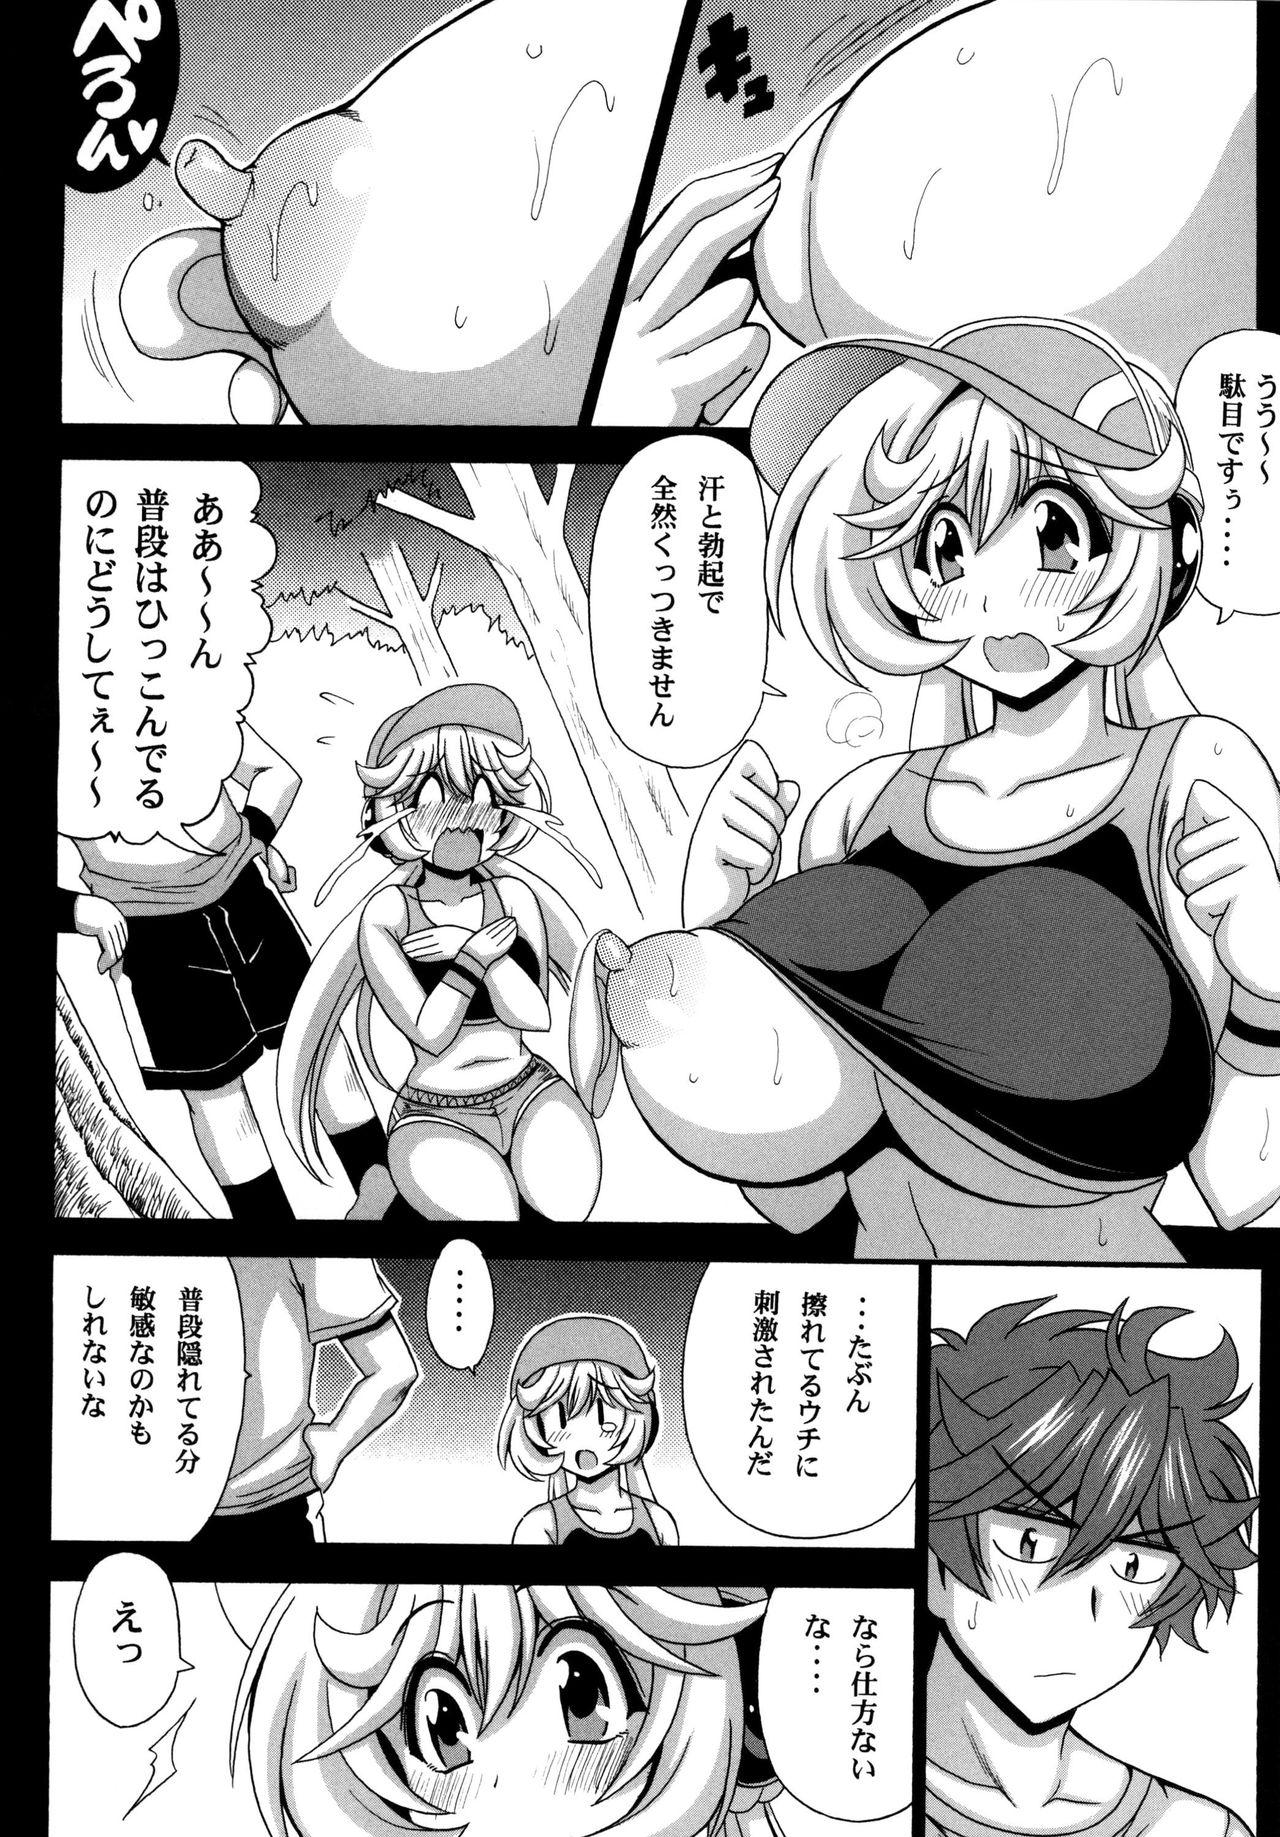 Stripping Kono Yoru o Suberu Mono ni Shukufuku o! 5 - Super robot wars Marido - Page 10